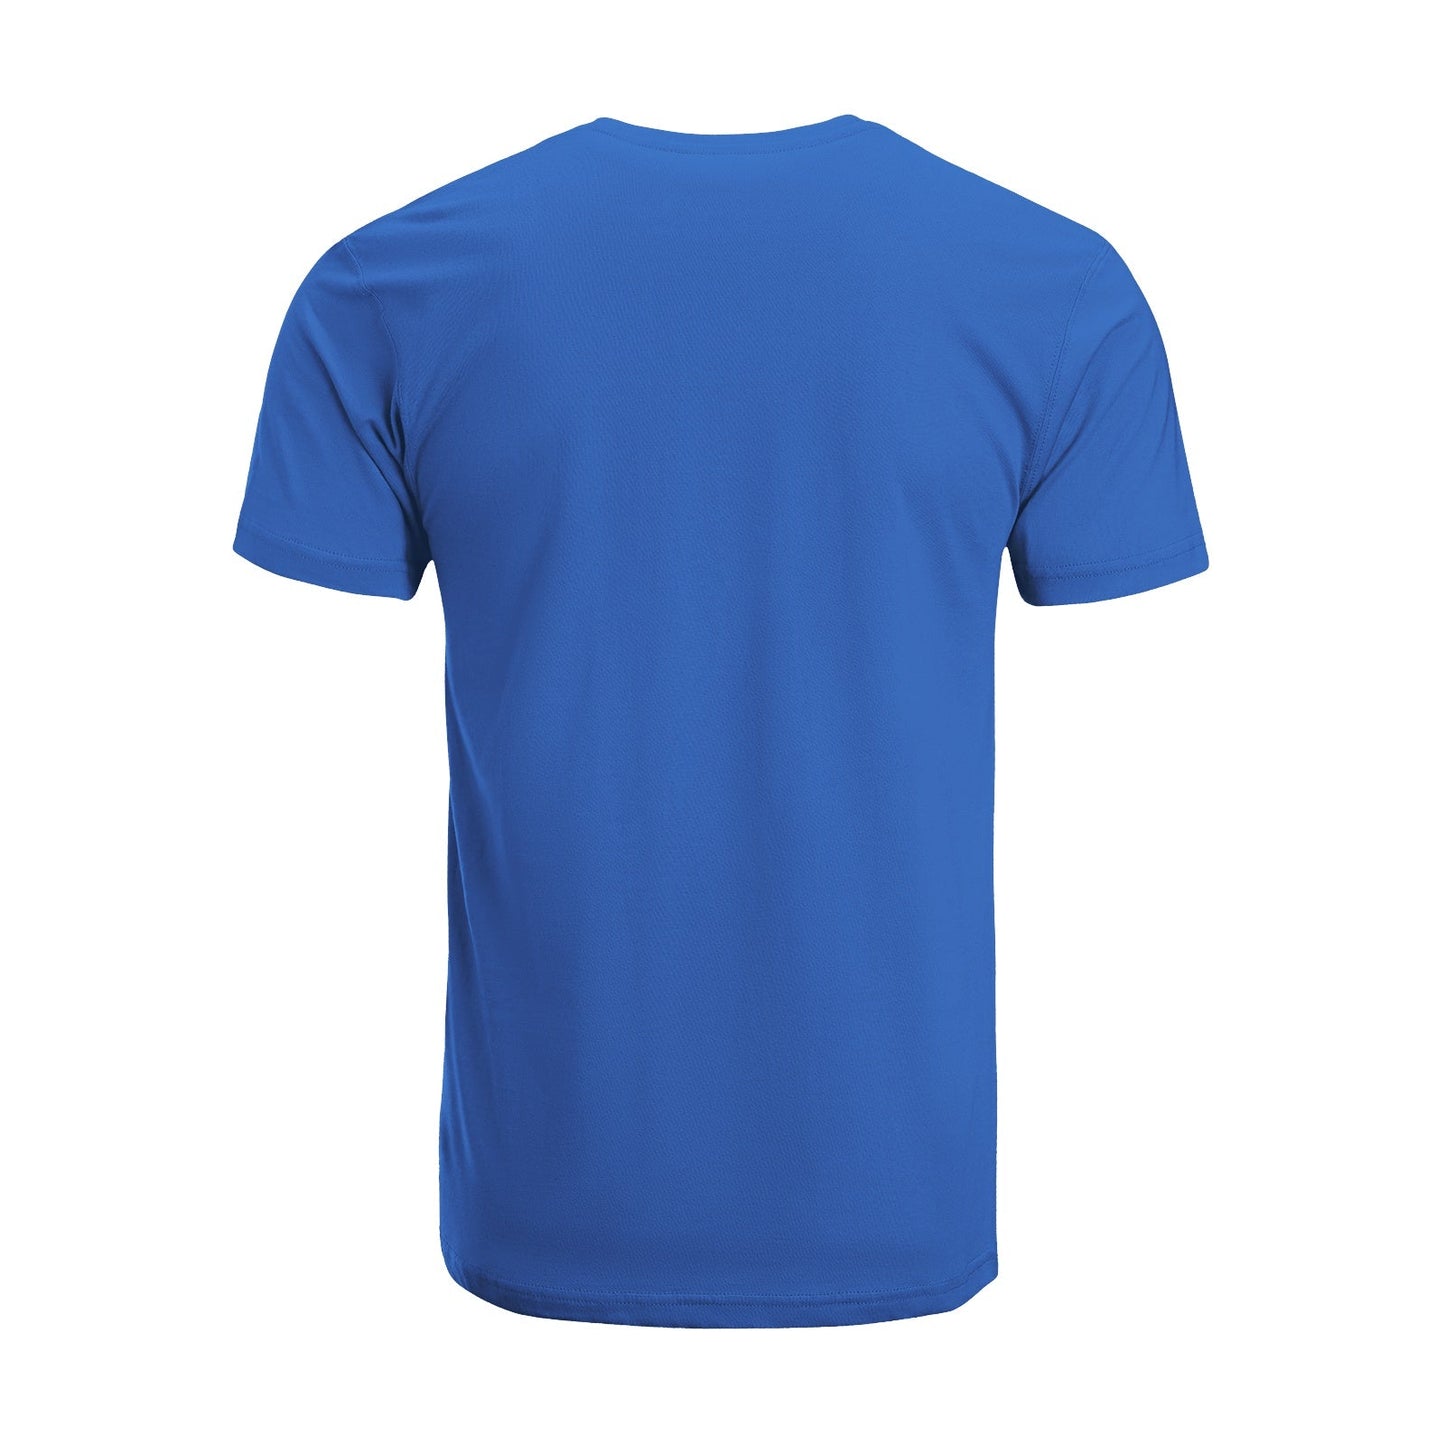 Unisex Short Sleeve Crew Neck Cotton Jersey T-Shirt TRUCK 23